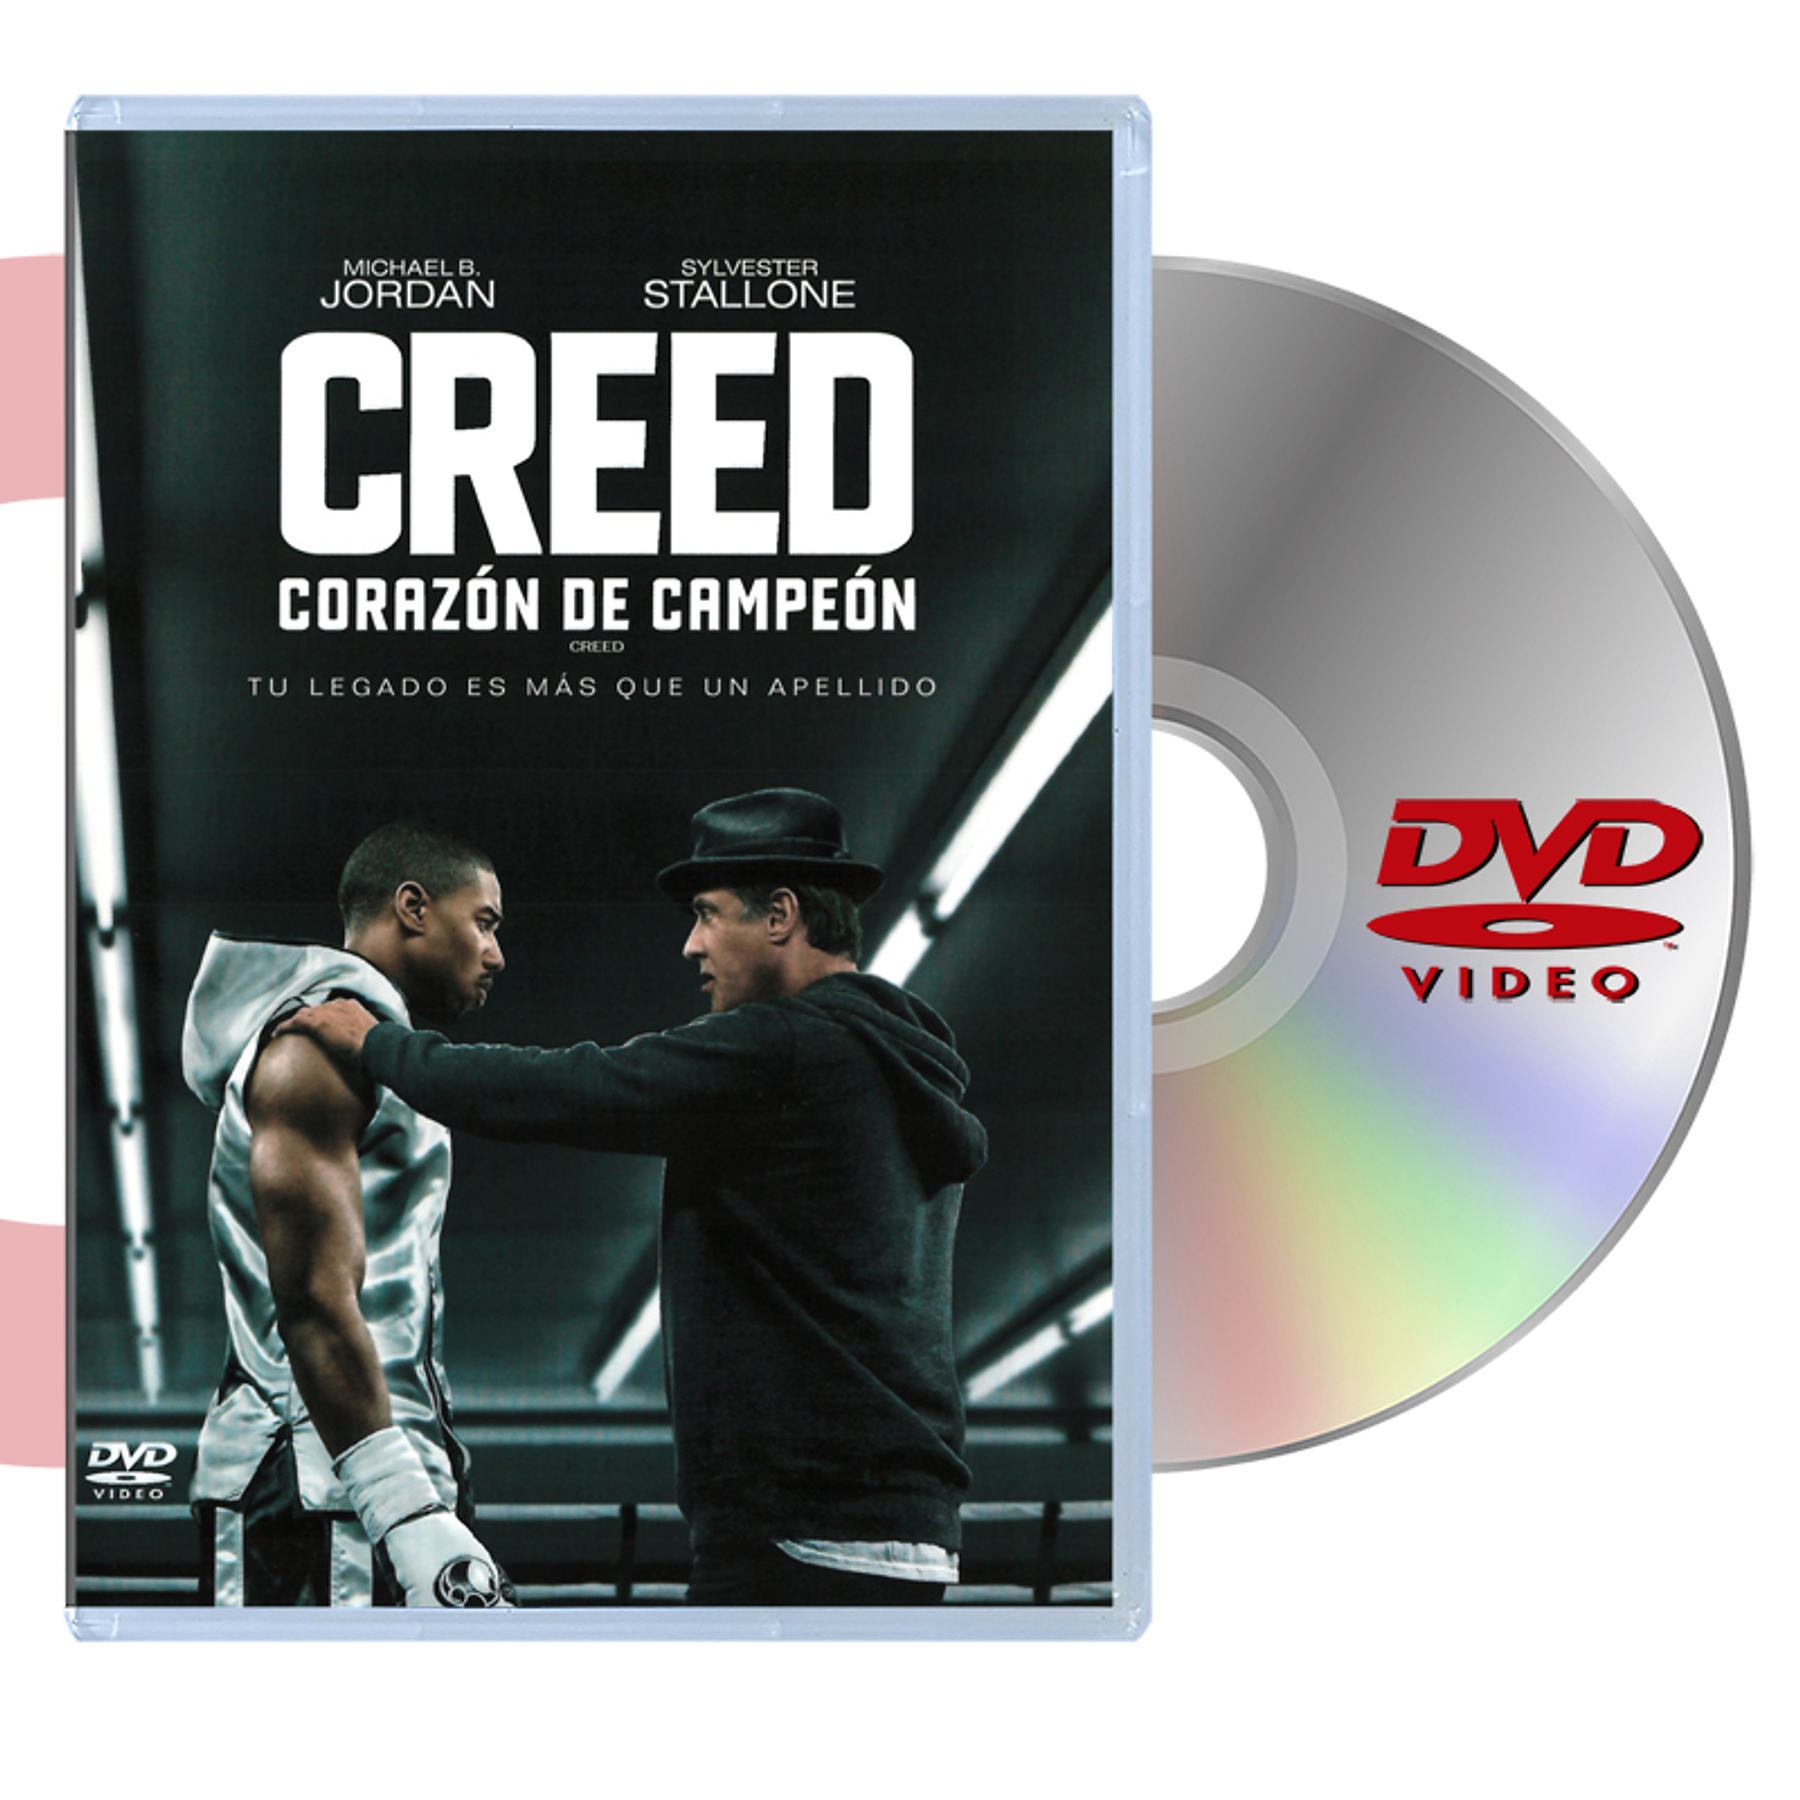 DVD CREED: CORAZON DE CAMPEON